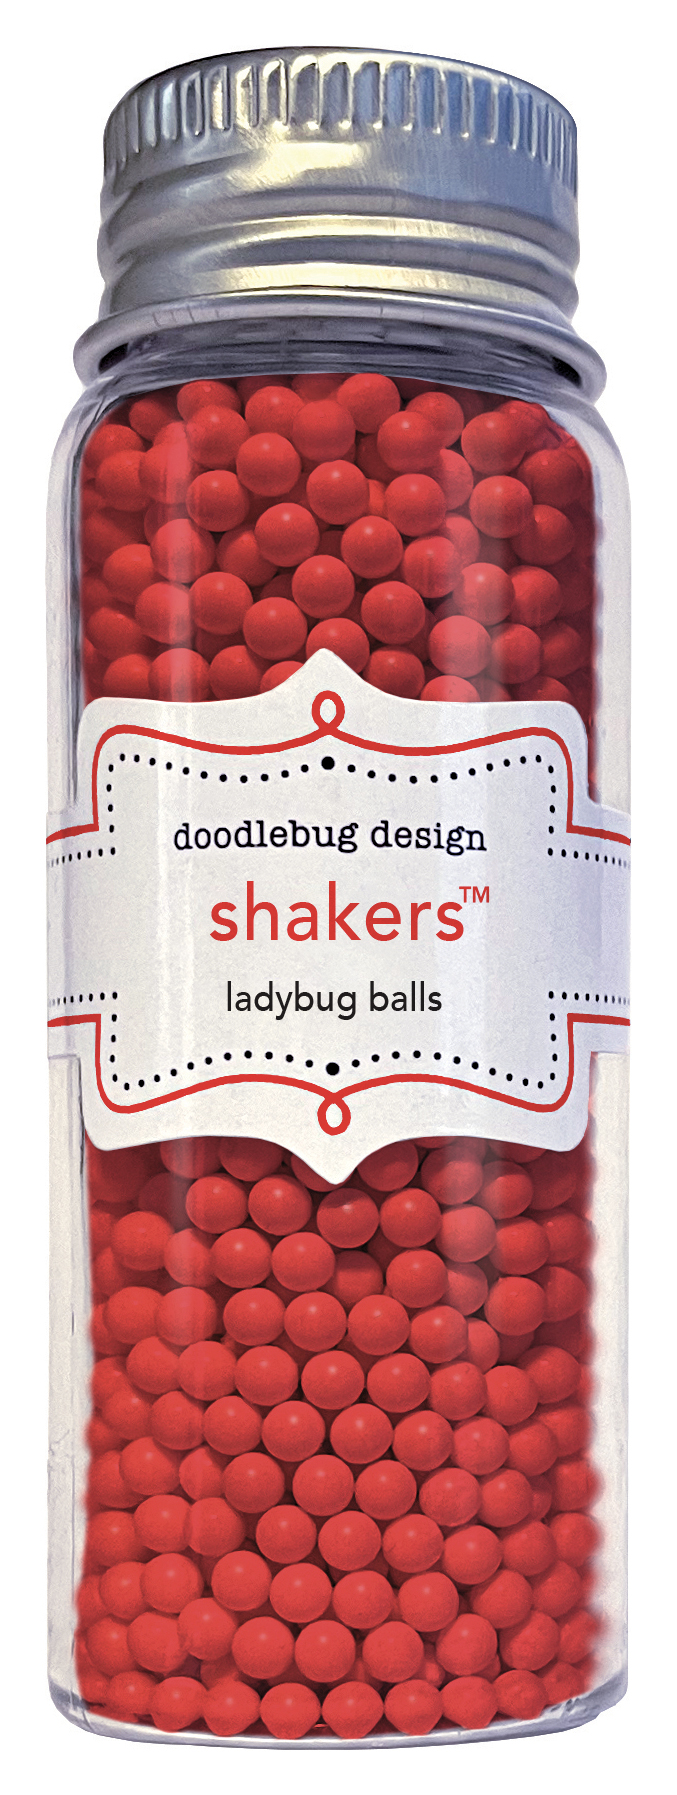 Doodlebug Ball Shakers Ladybug